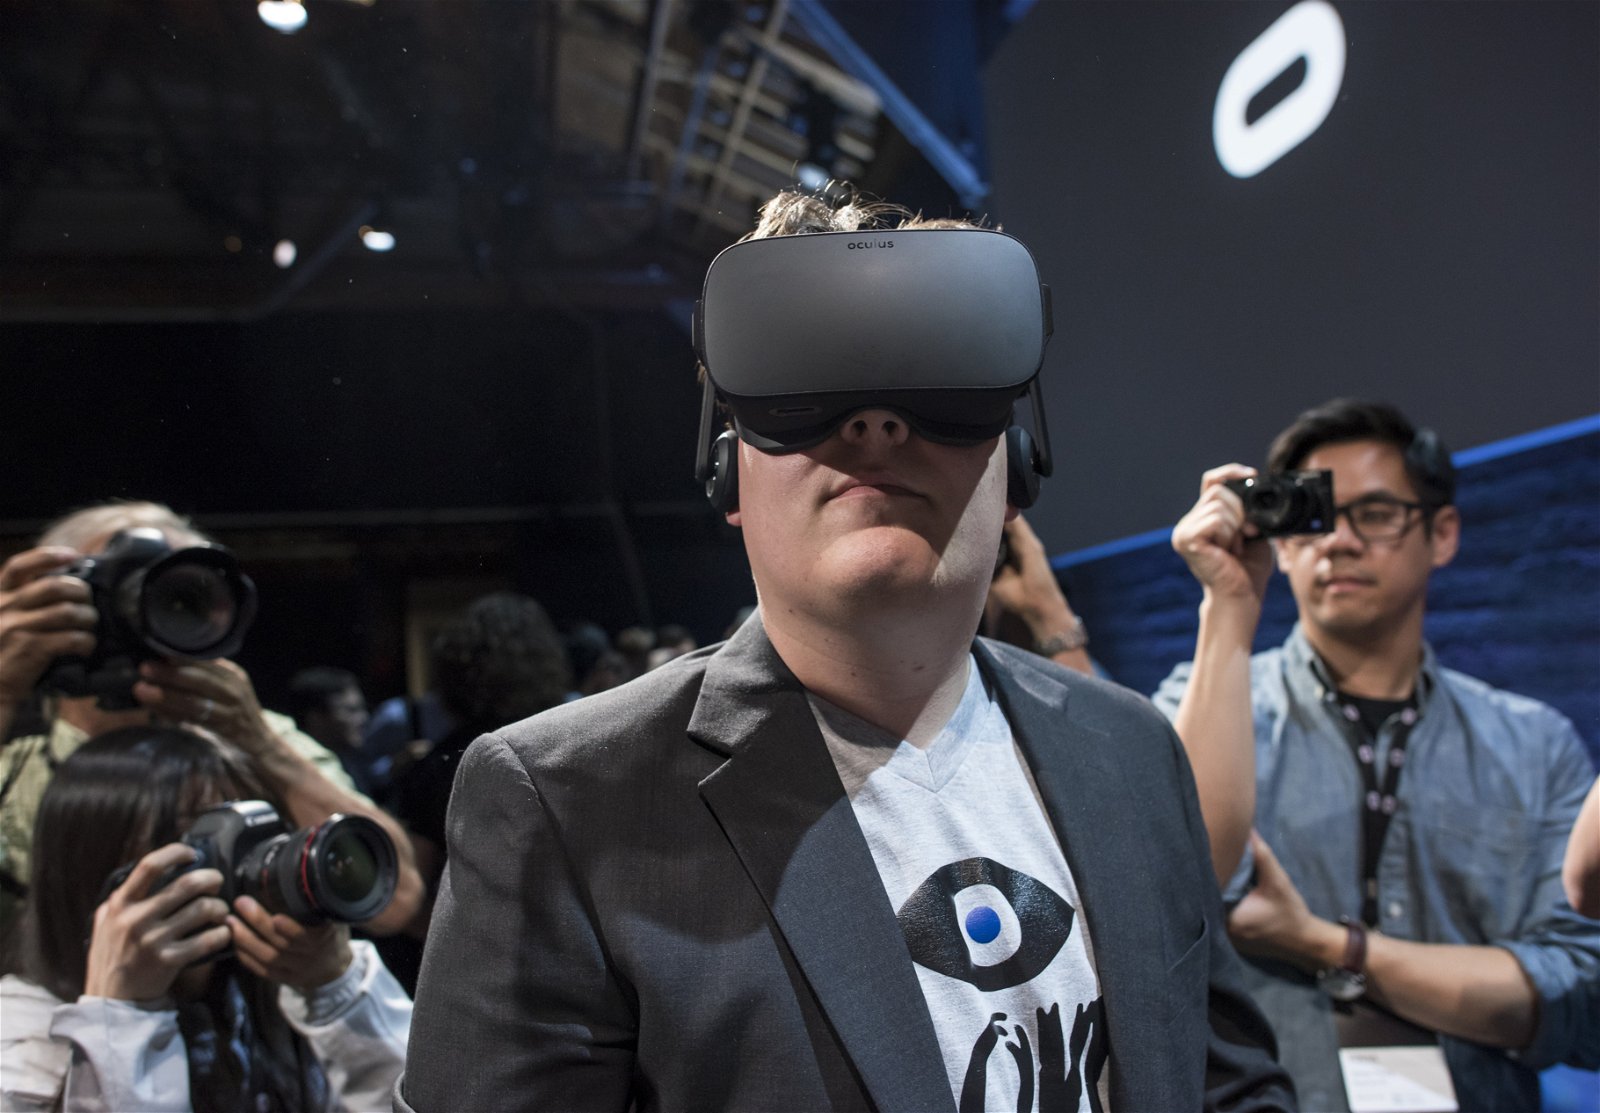 Умрите в реальной жизни, если умрете в игре: зловещие новые очки виртуальной реальности сделают это за владельца